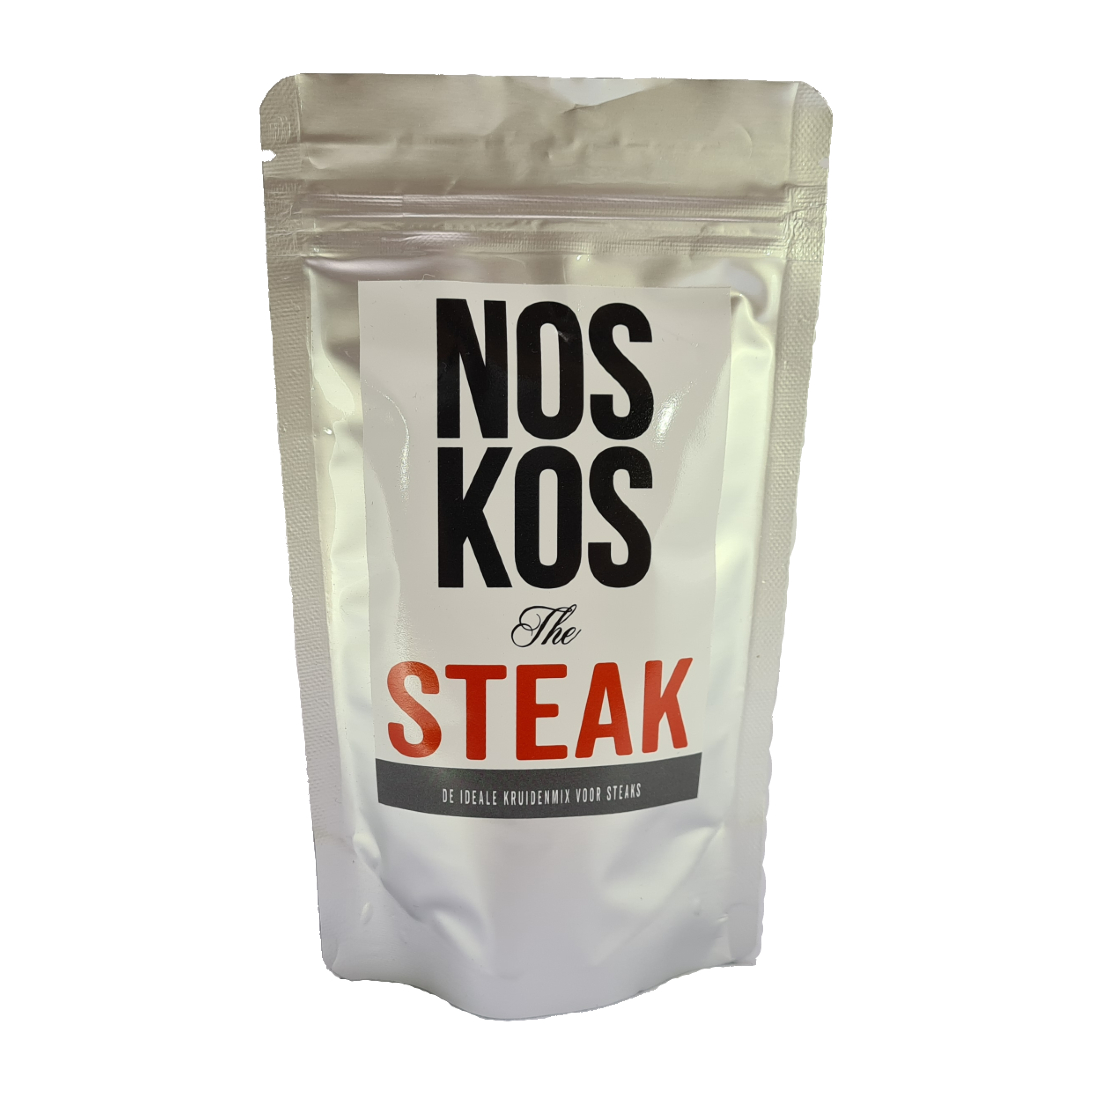 Noskos-the-steak-1